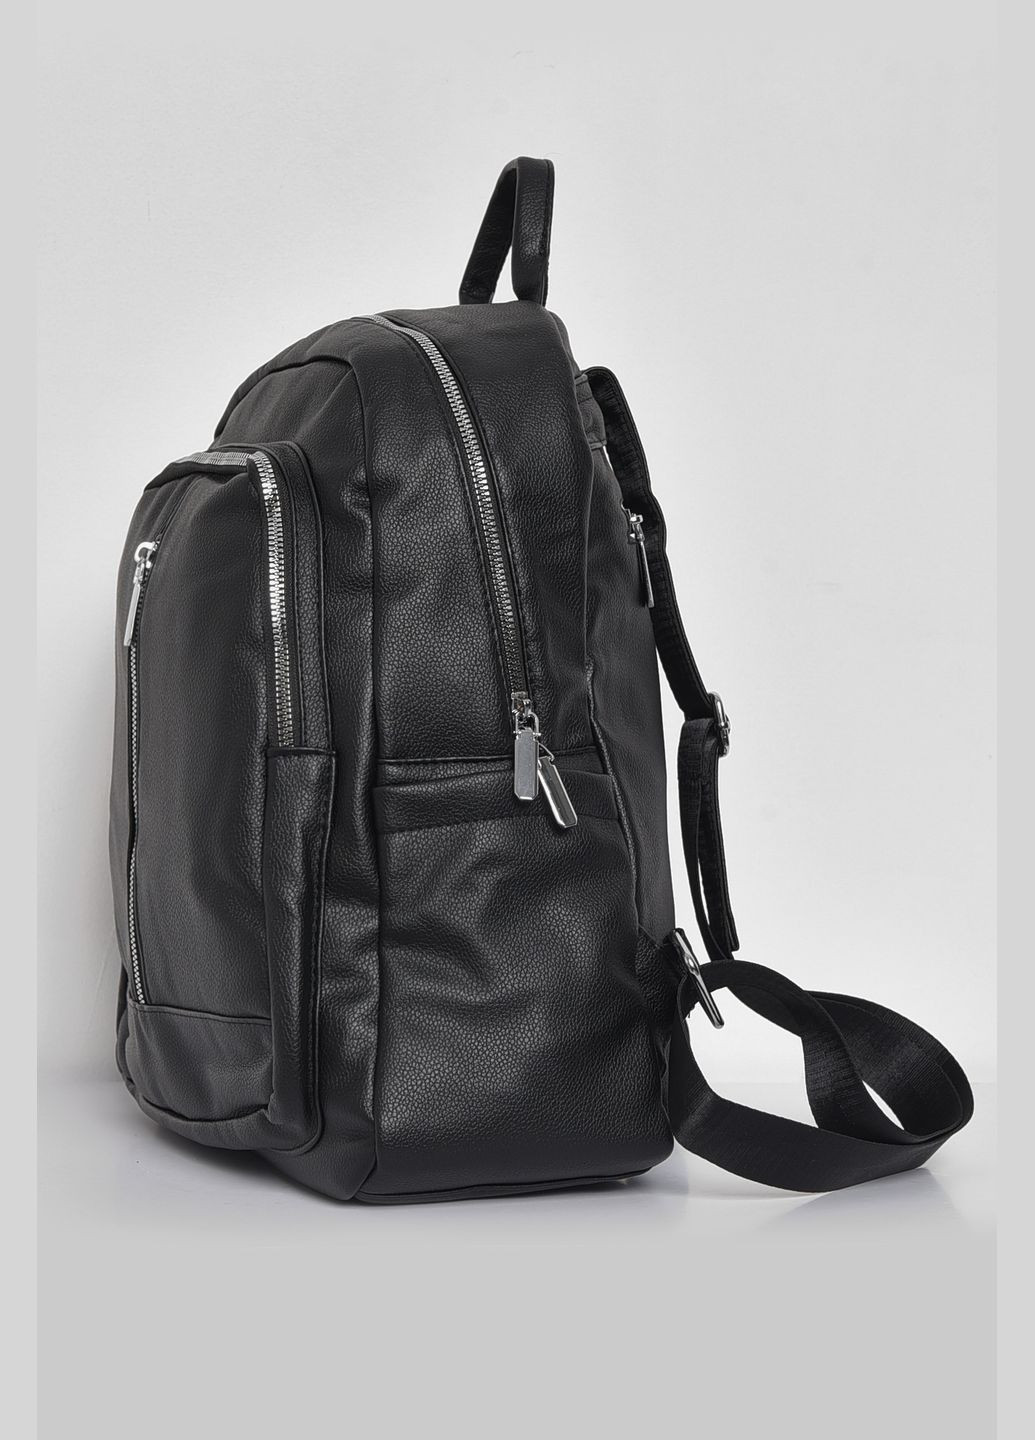 Жіночий рюкзак з екошкіри чорного кольору Let's Shop (280938018)